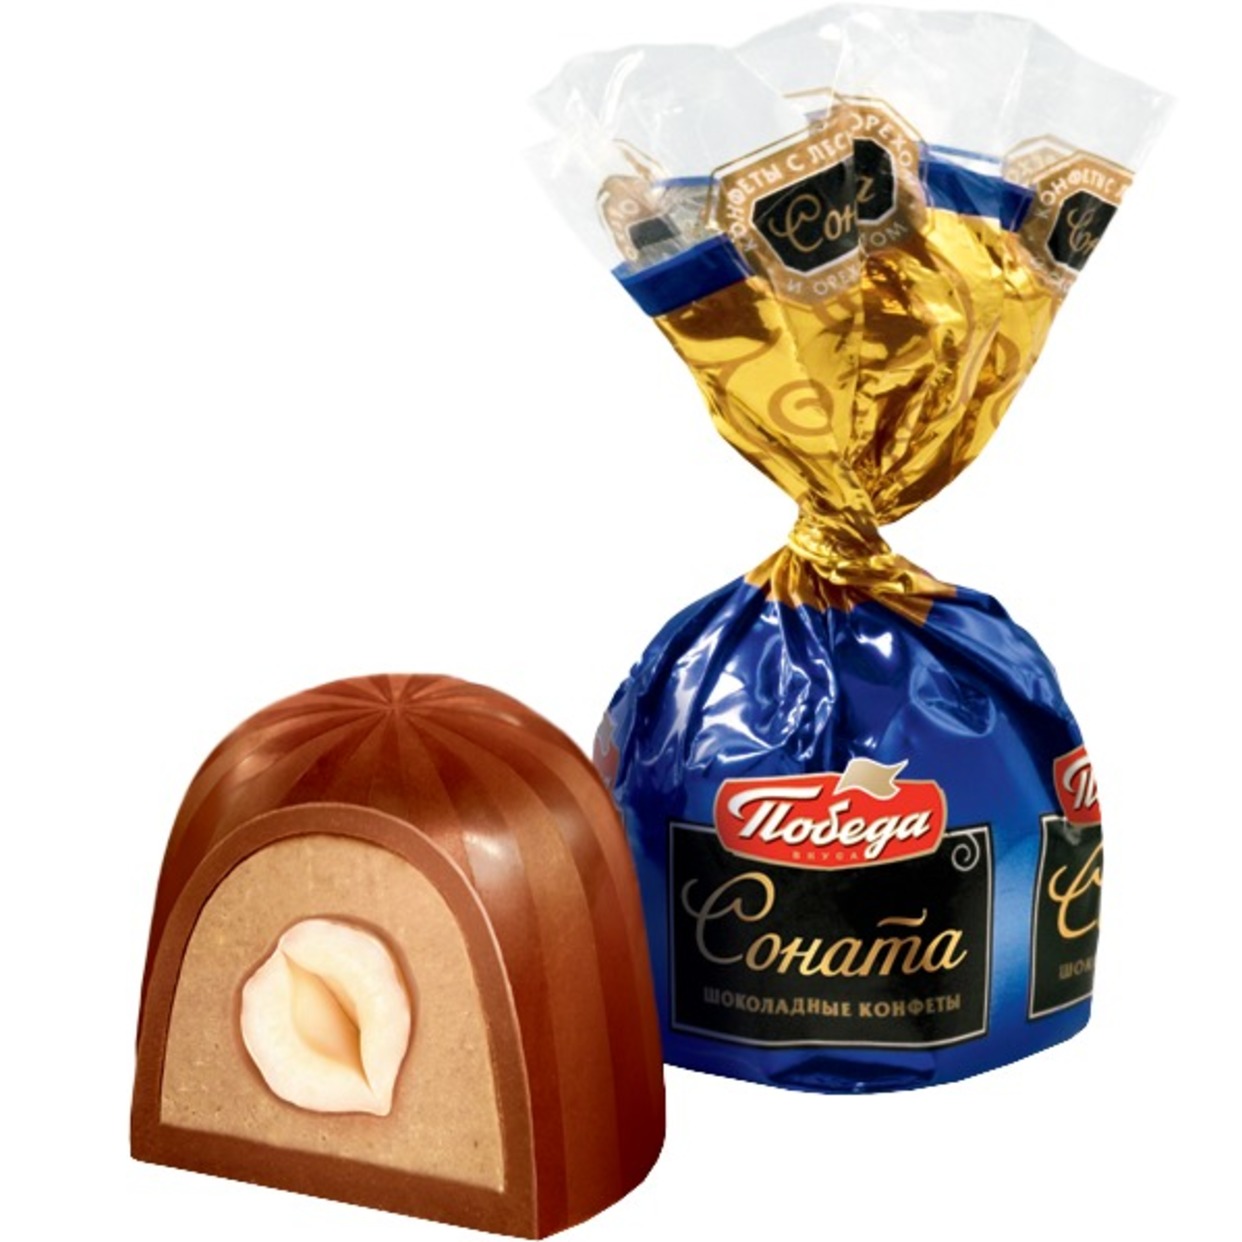 Конфеты шоколадные "Соната" с лесным орехом и ореховым кремом 2кг/Победа